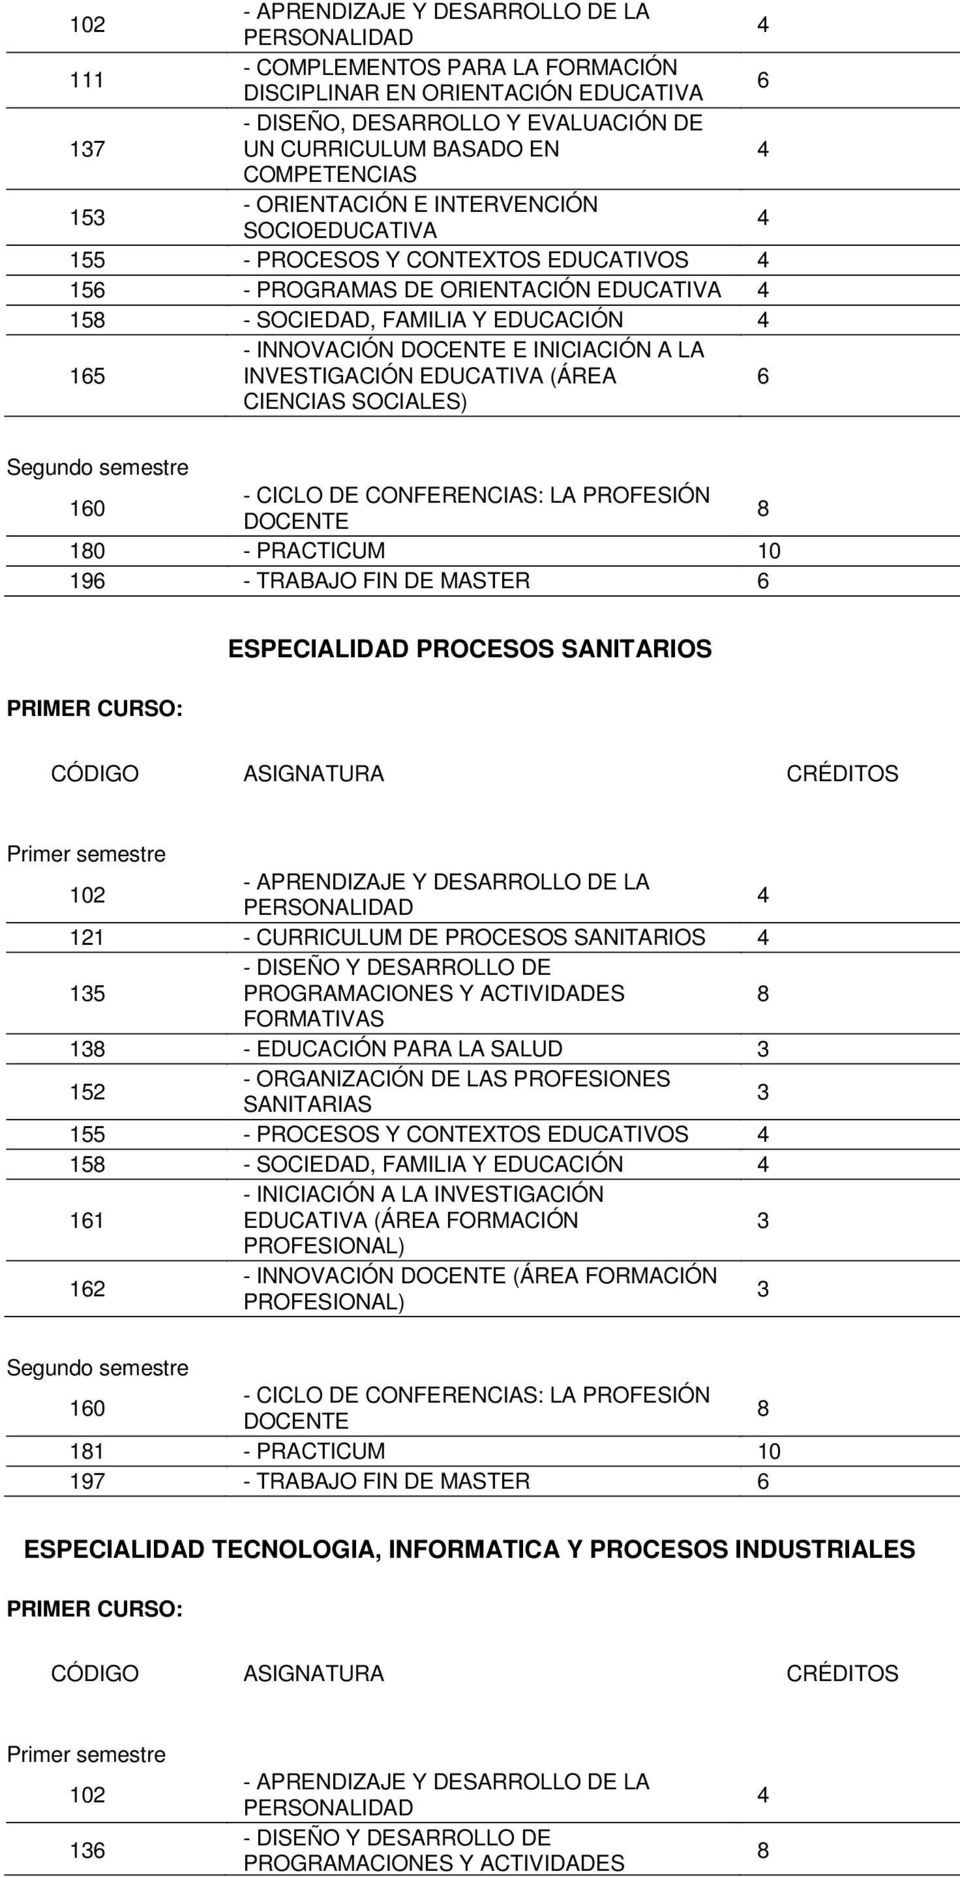 PROCESOS SANITARIOS 121 - CURRICULUM DE PROCESOS SANITARIOS 15 1 - EDUCACIÓN PARA LA SALUD - ORGANIZACIÓN DE LAS PROFESIONES 152 SANITARIAS 155 - PROCESOS Y CONTEXTOS EDUCATIVOS 15 - SOCIEDAD,